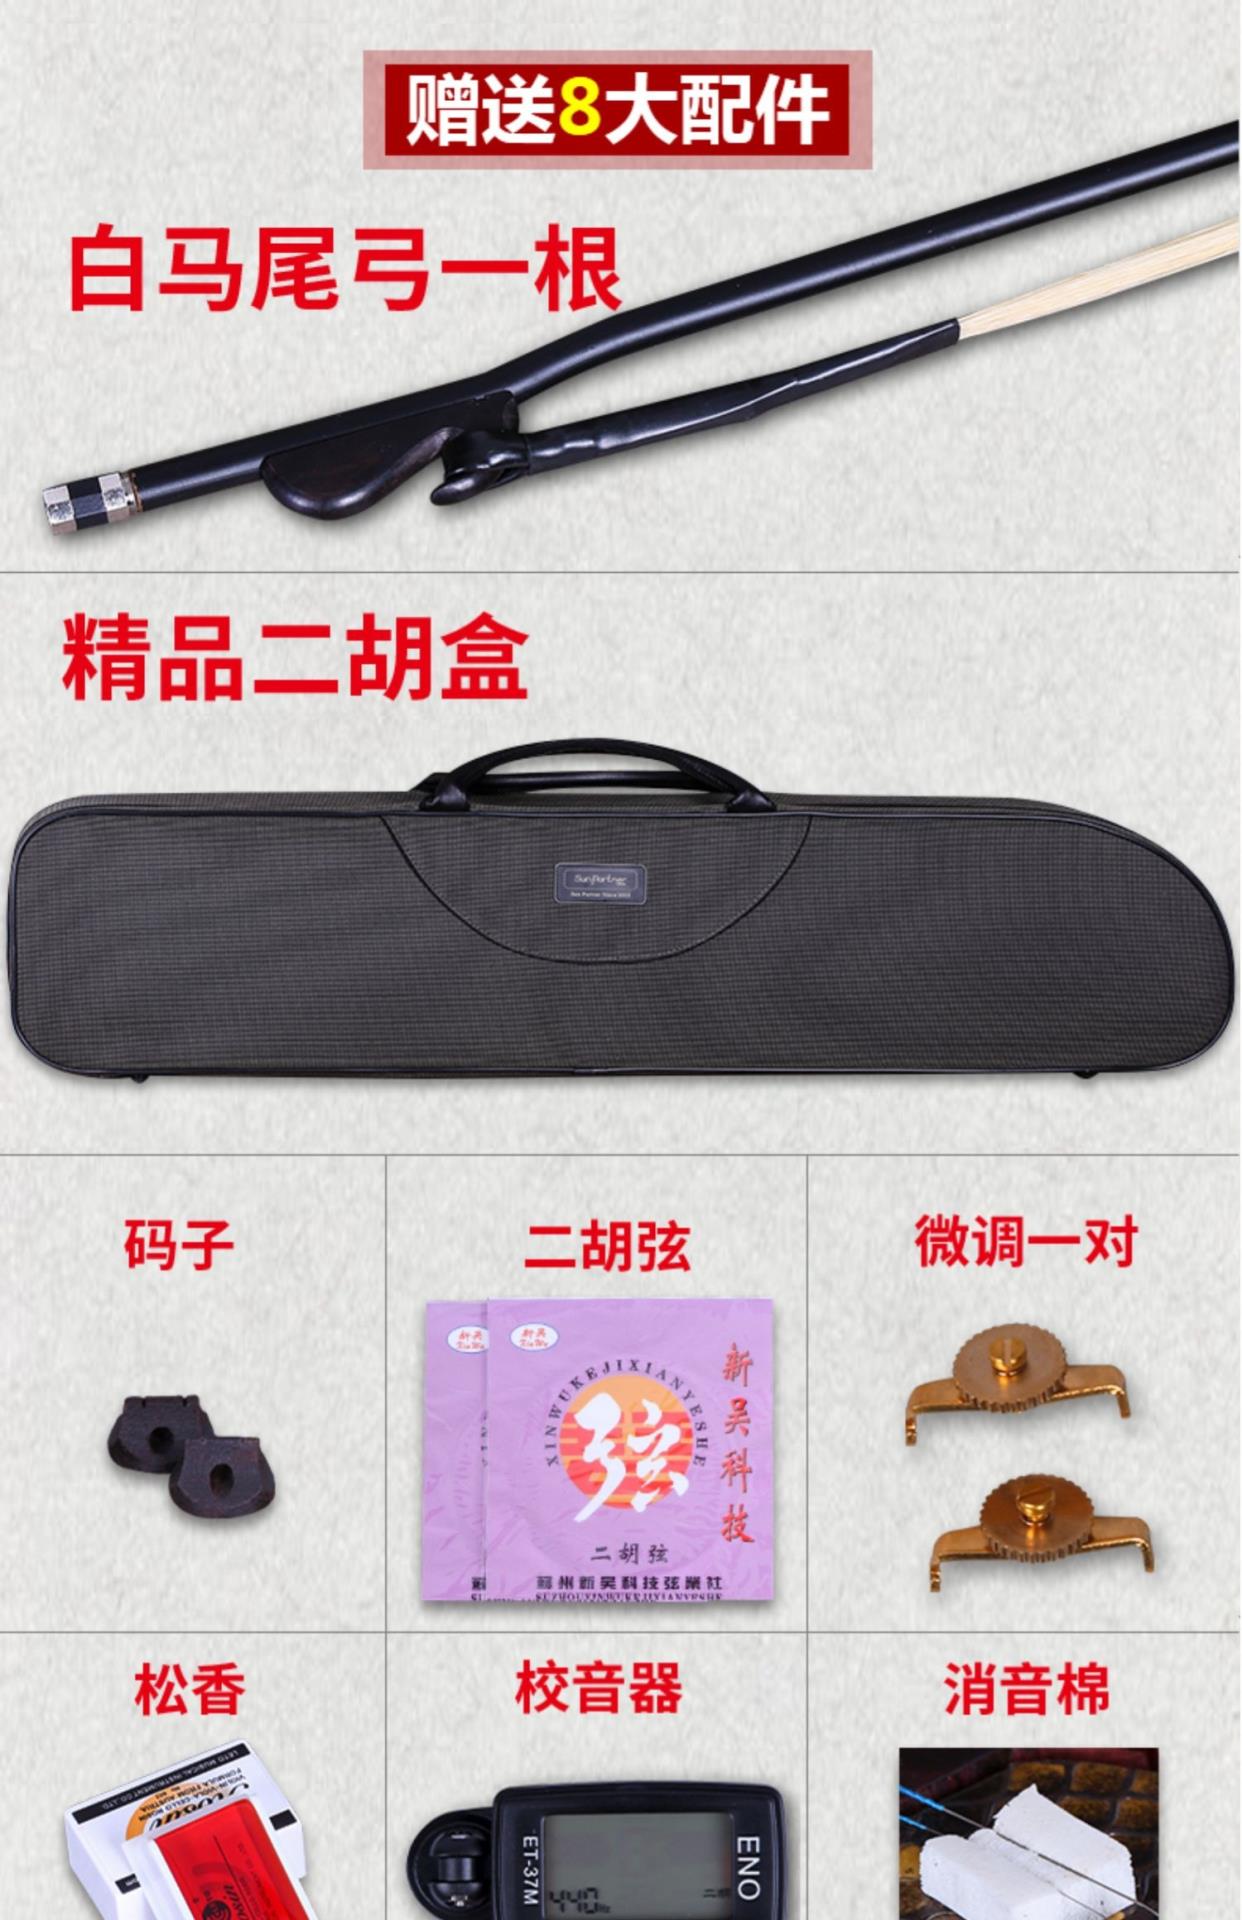 Xác thực Lu Linsheng năm sao triều đại nhà Minh và nhà Thanh vật liệu cũ gỗ gụ cũ Erquan Erhu nhạc cụ kiểm tra cấp độ đàn piano cũ gỗ gụ Erquan - Nhạc cụ dân tộc